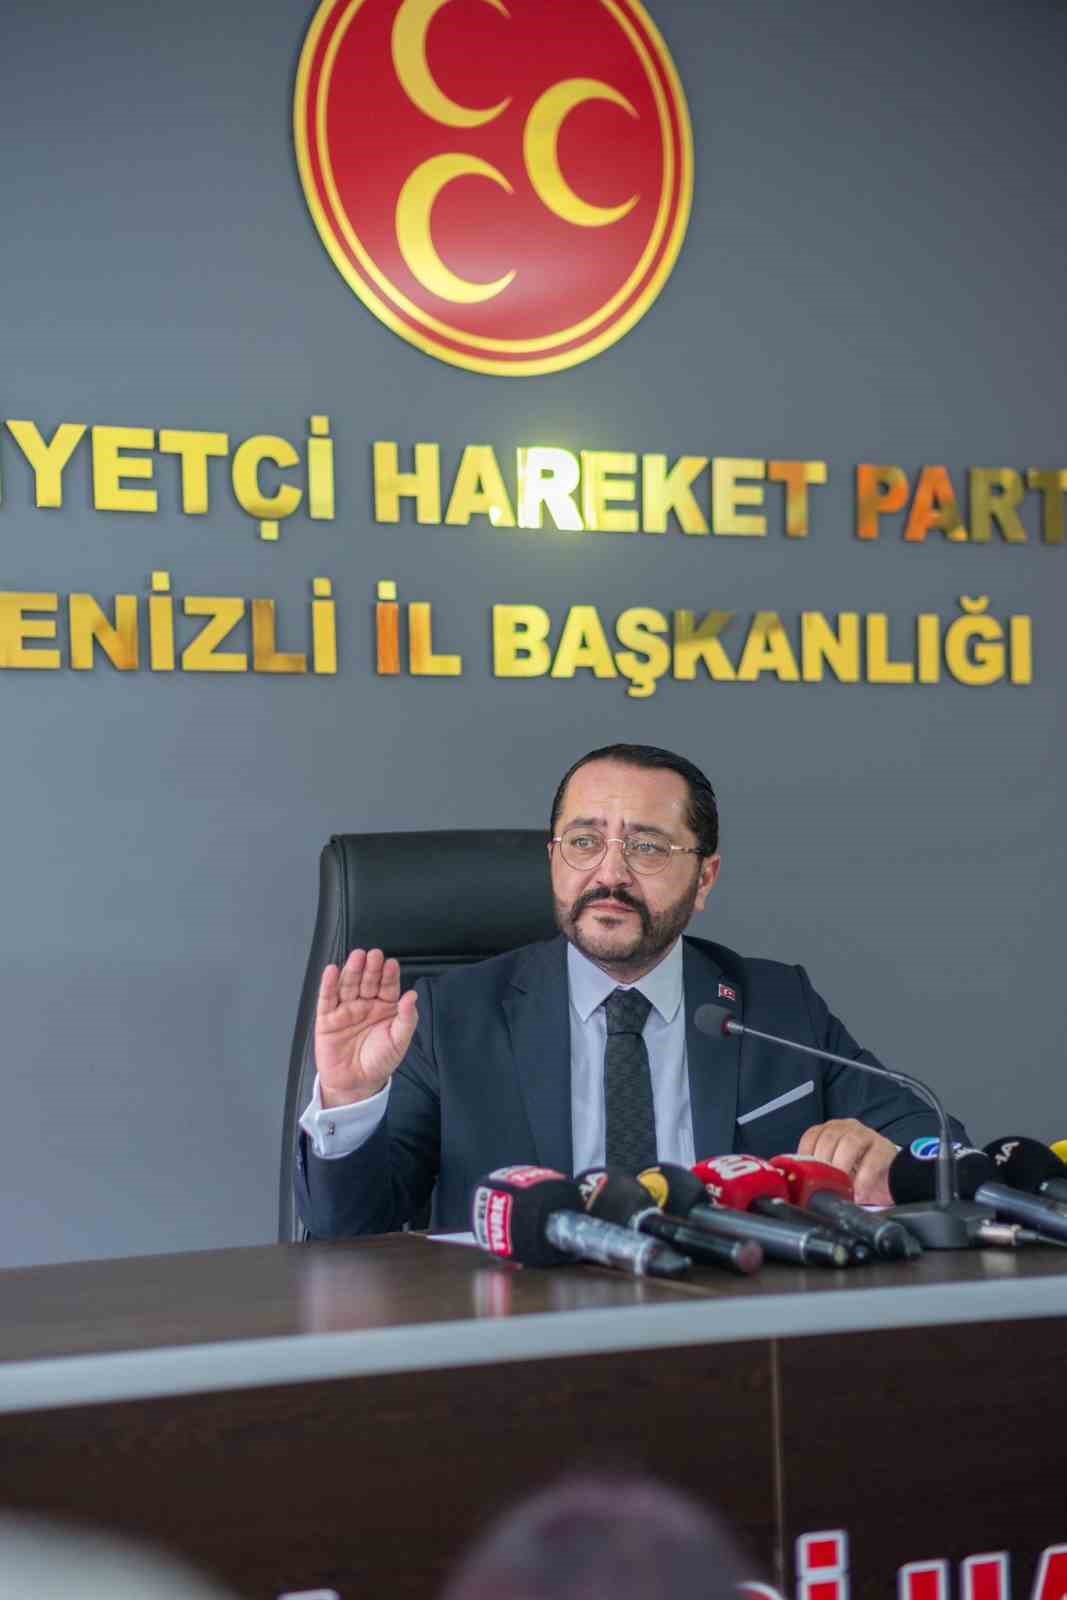 MHP İl Başkanı Yılmaz; “İstikrar için Pazar günü Türk ve Türkiye Yüzyılı güçlü bir ivme almalıdır”
